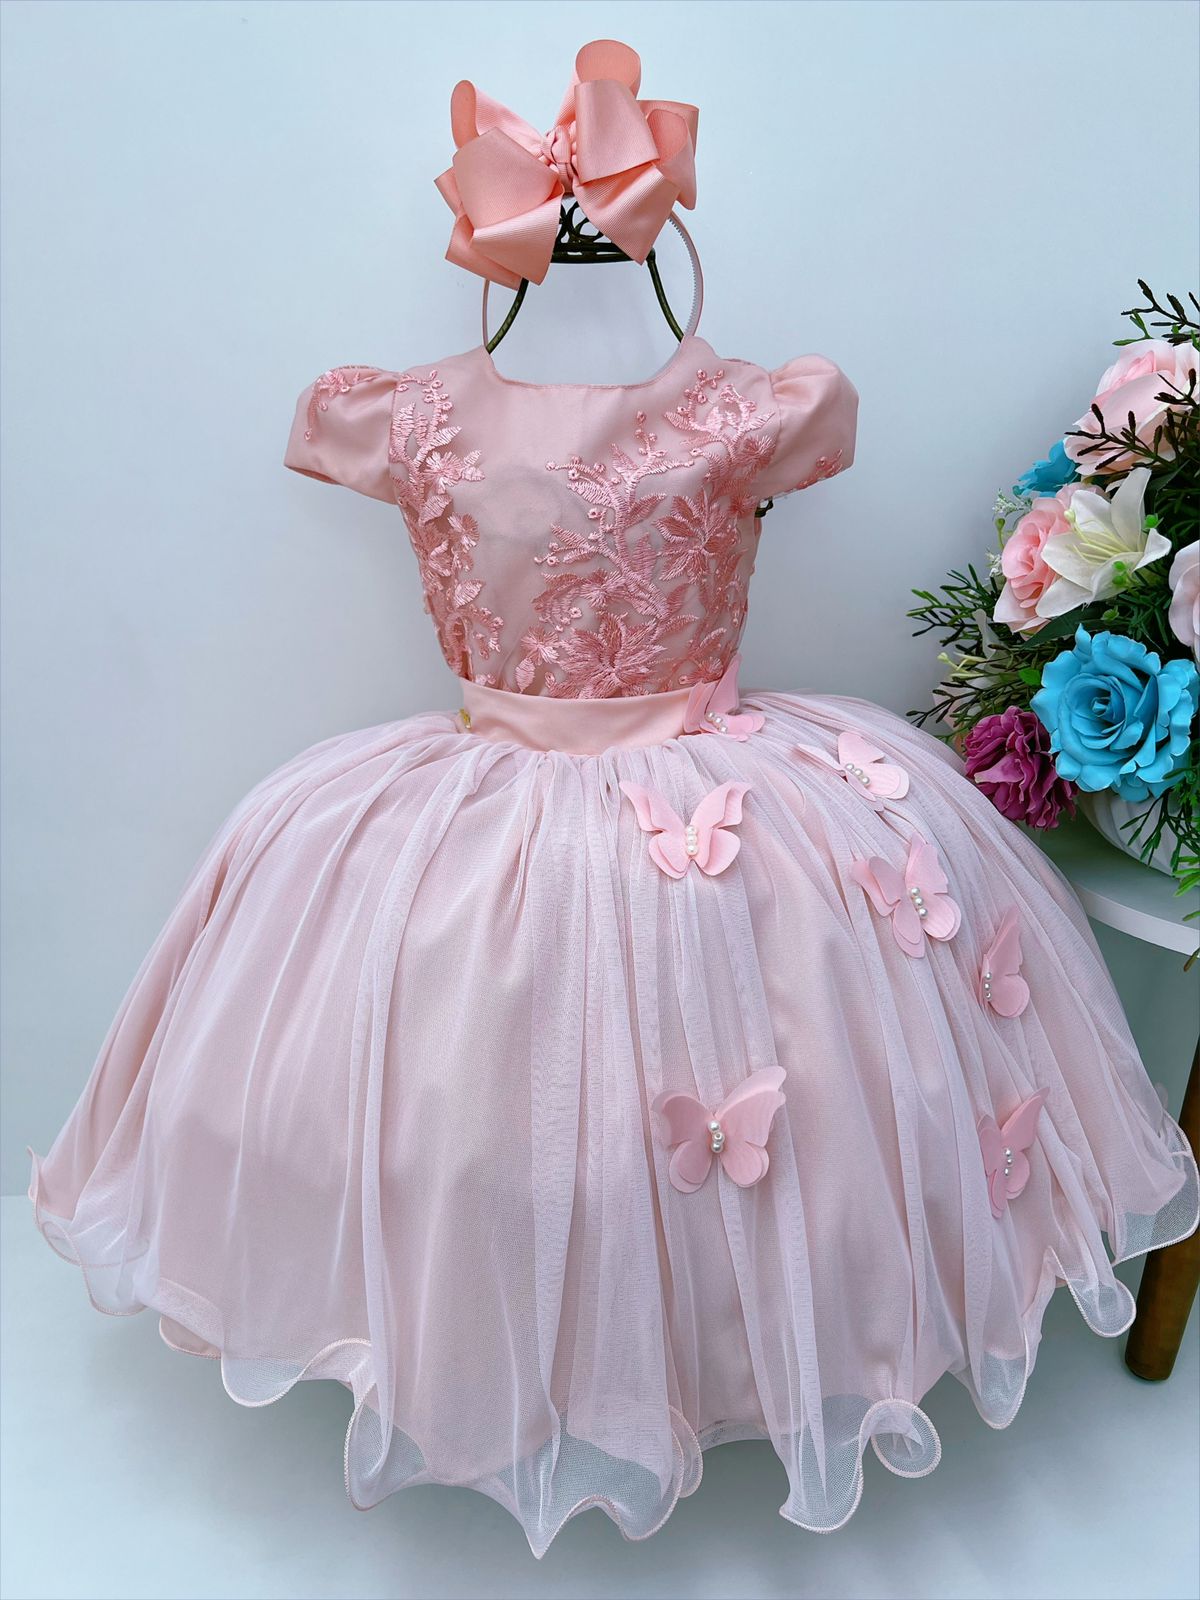 Vestido Infantil Rosé Renda Aplique Borboletas